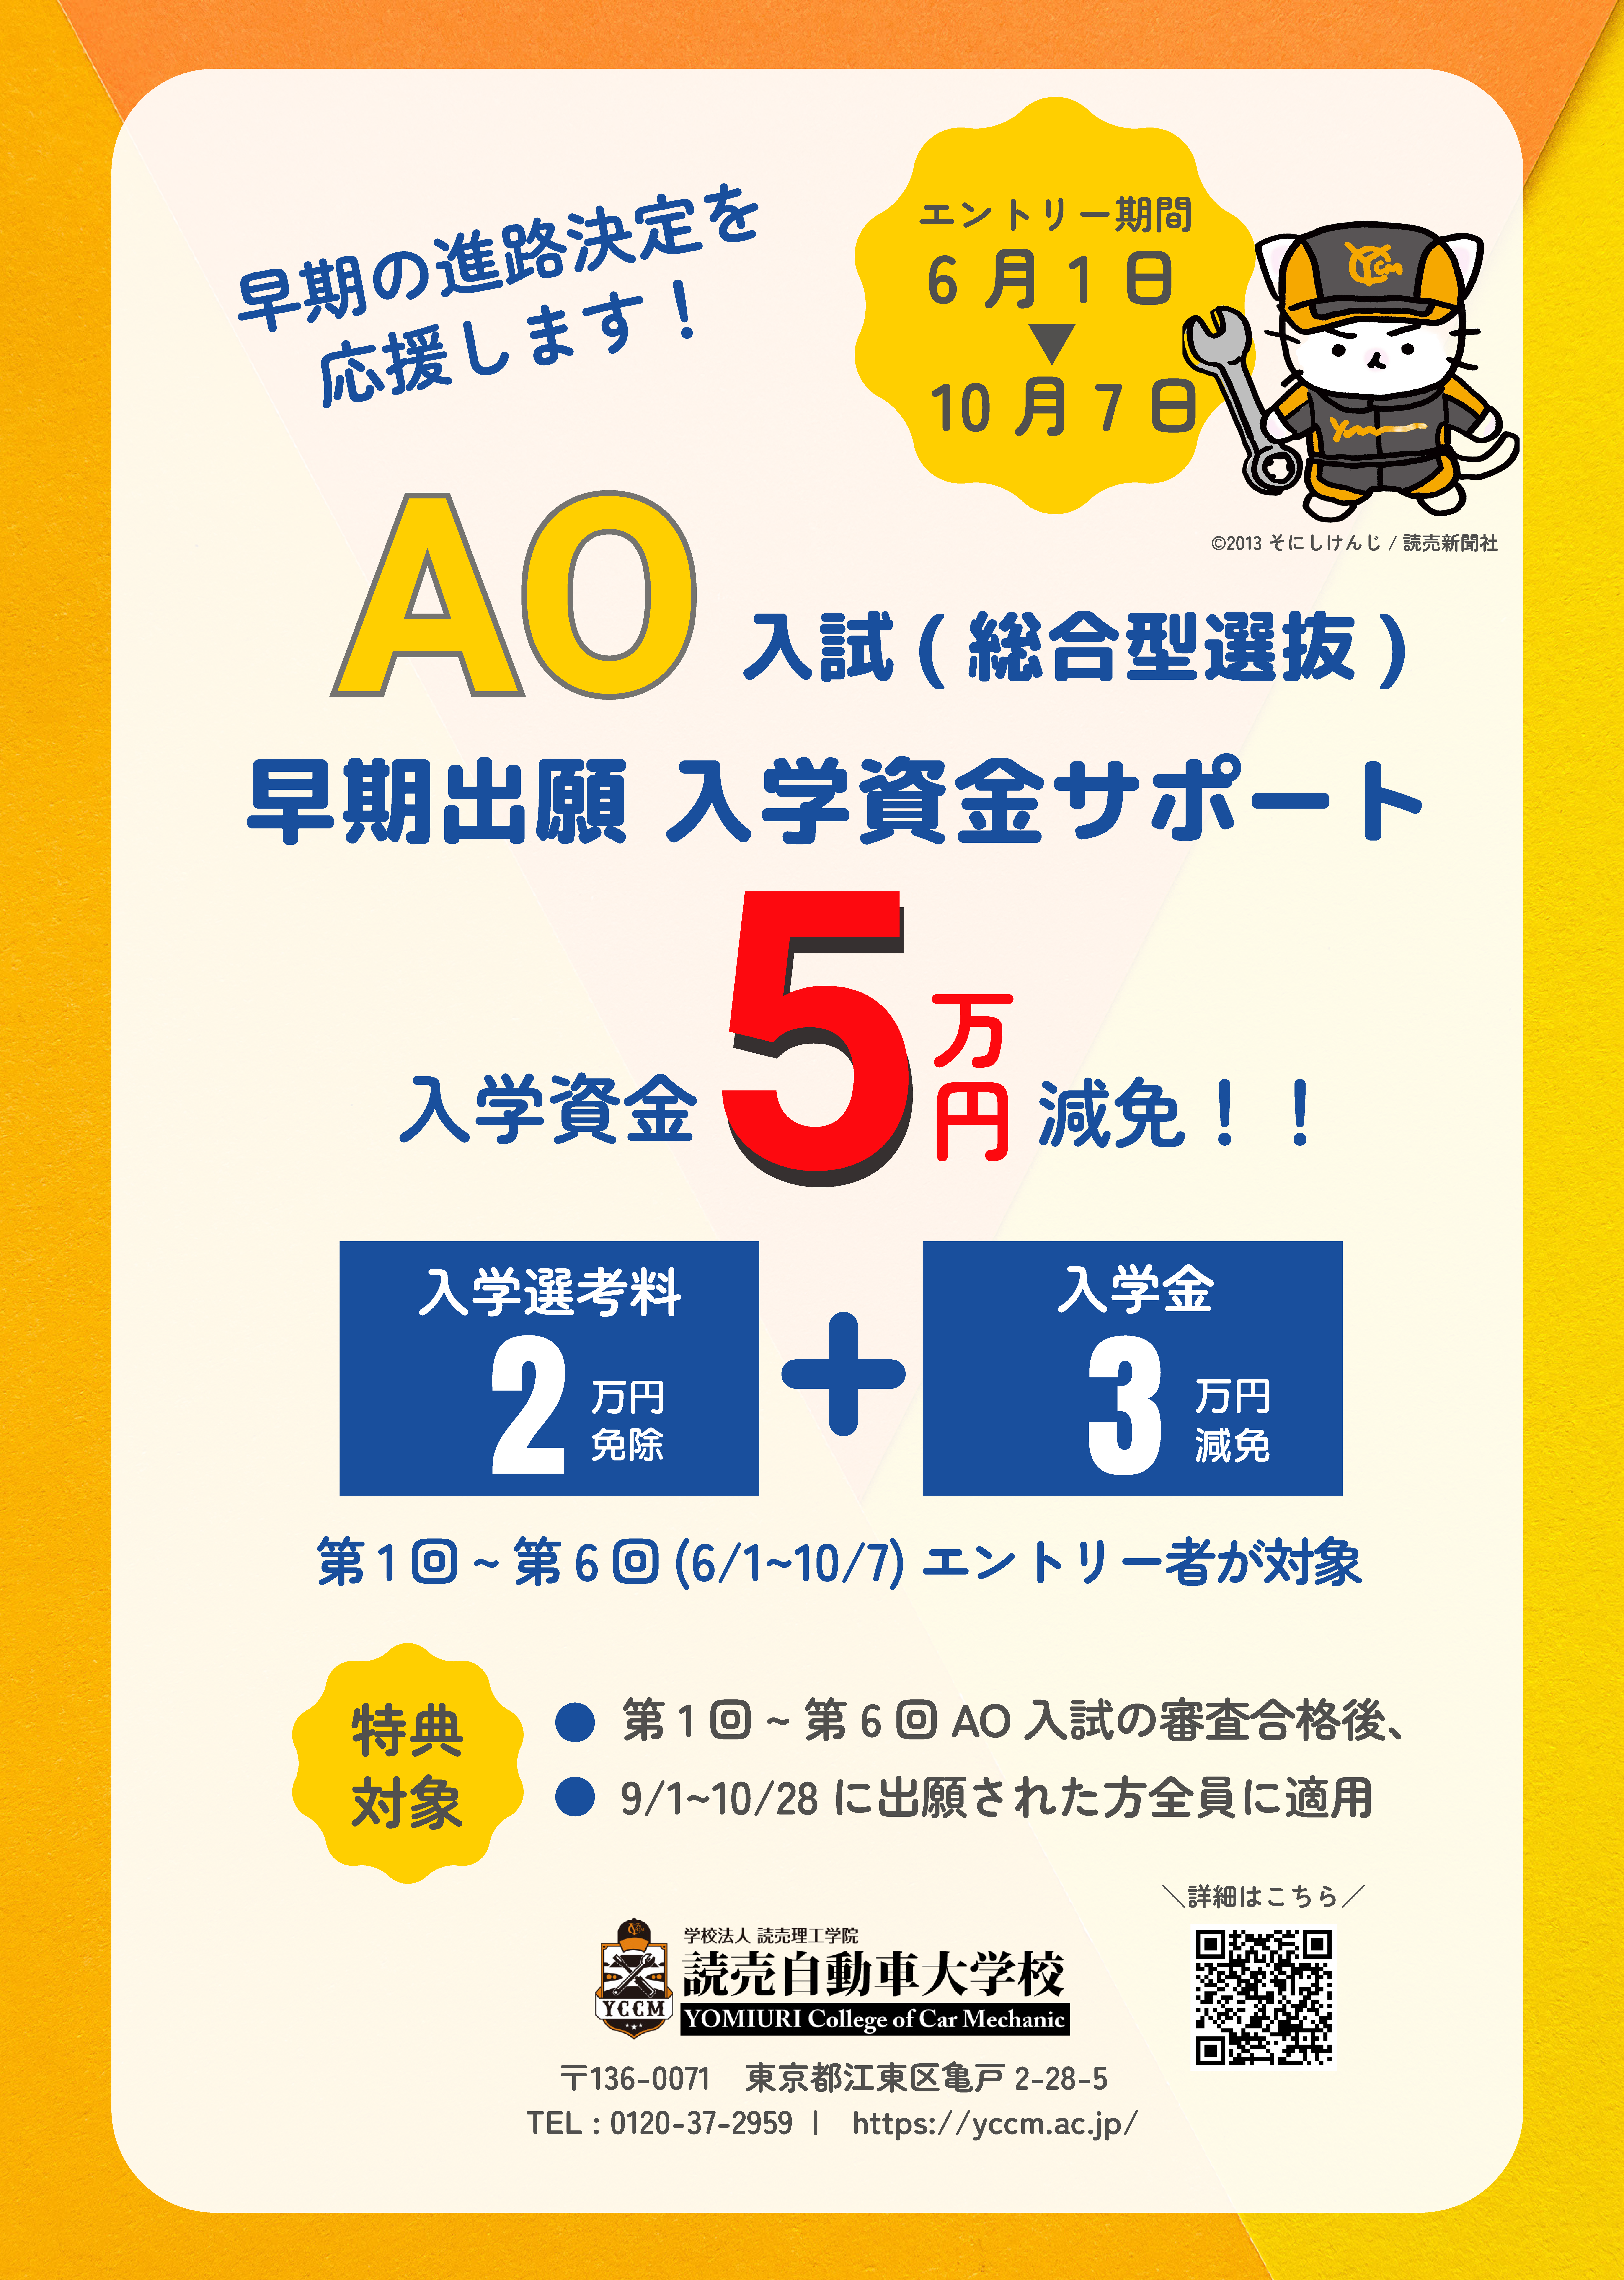 AO入試(総合型選抜)の早期出願で5万円の入学資金をサポート